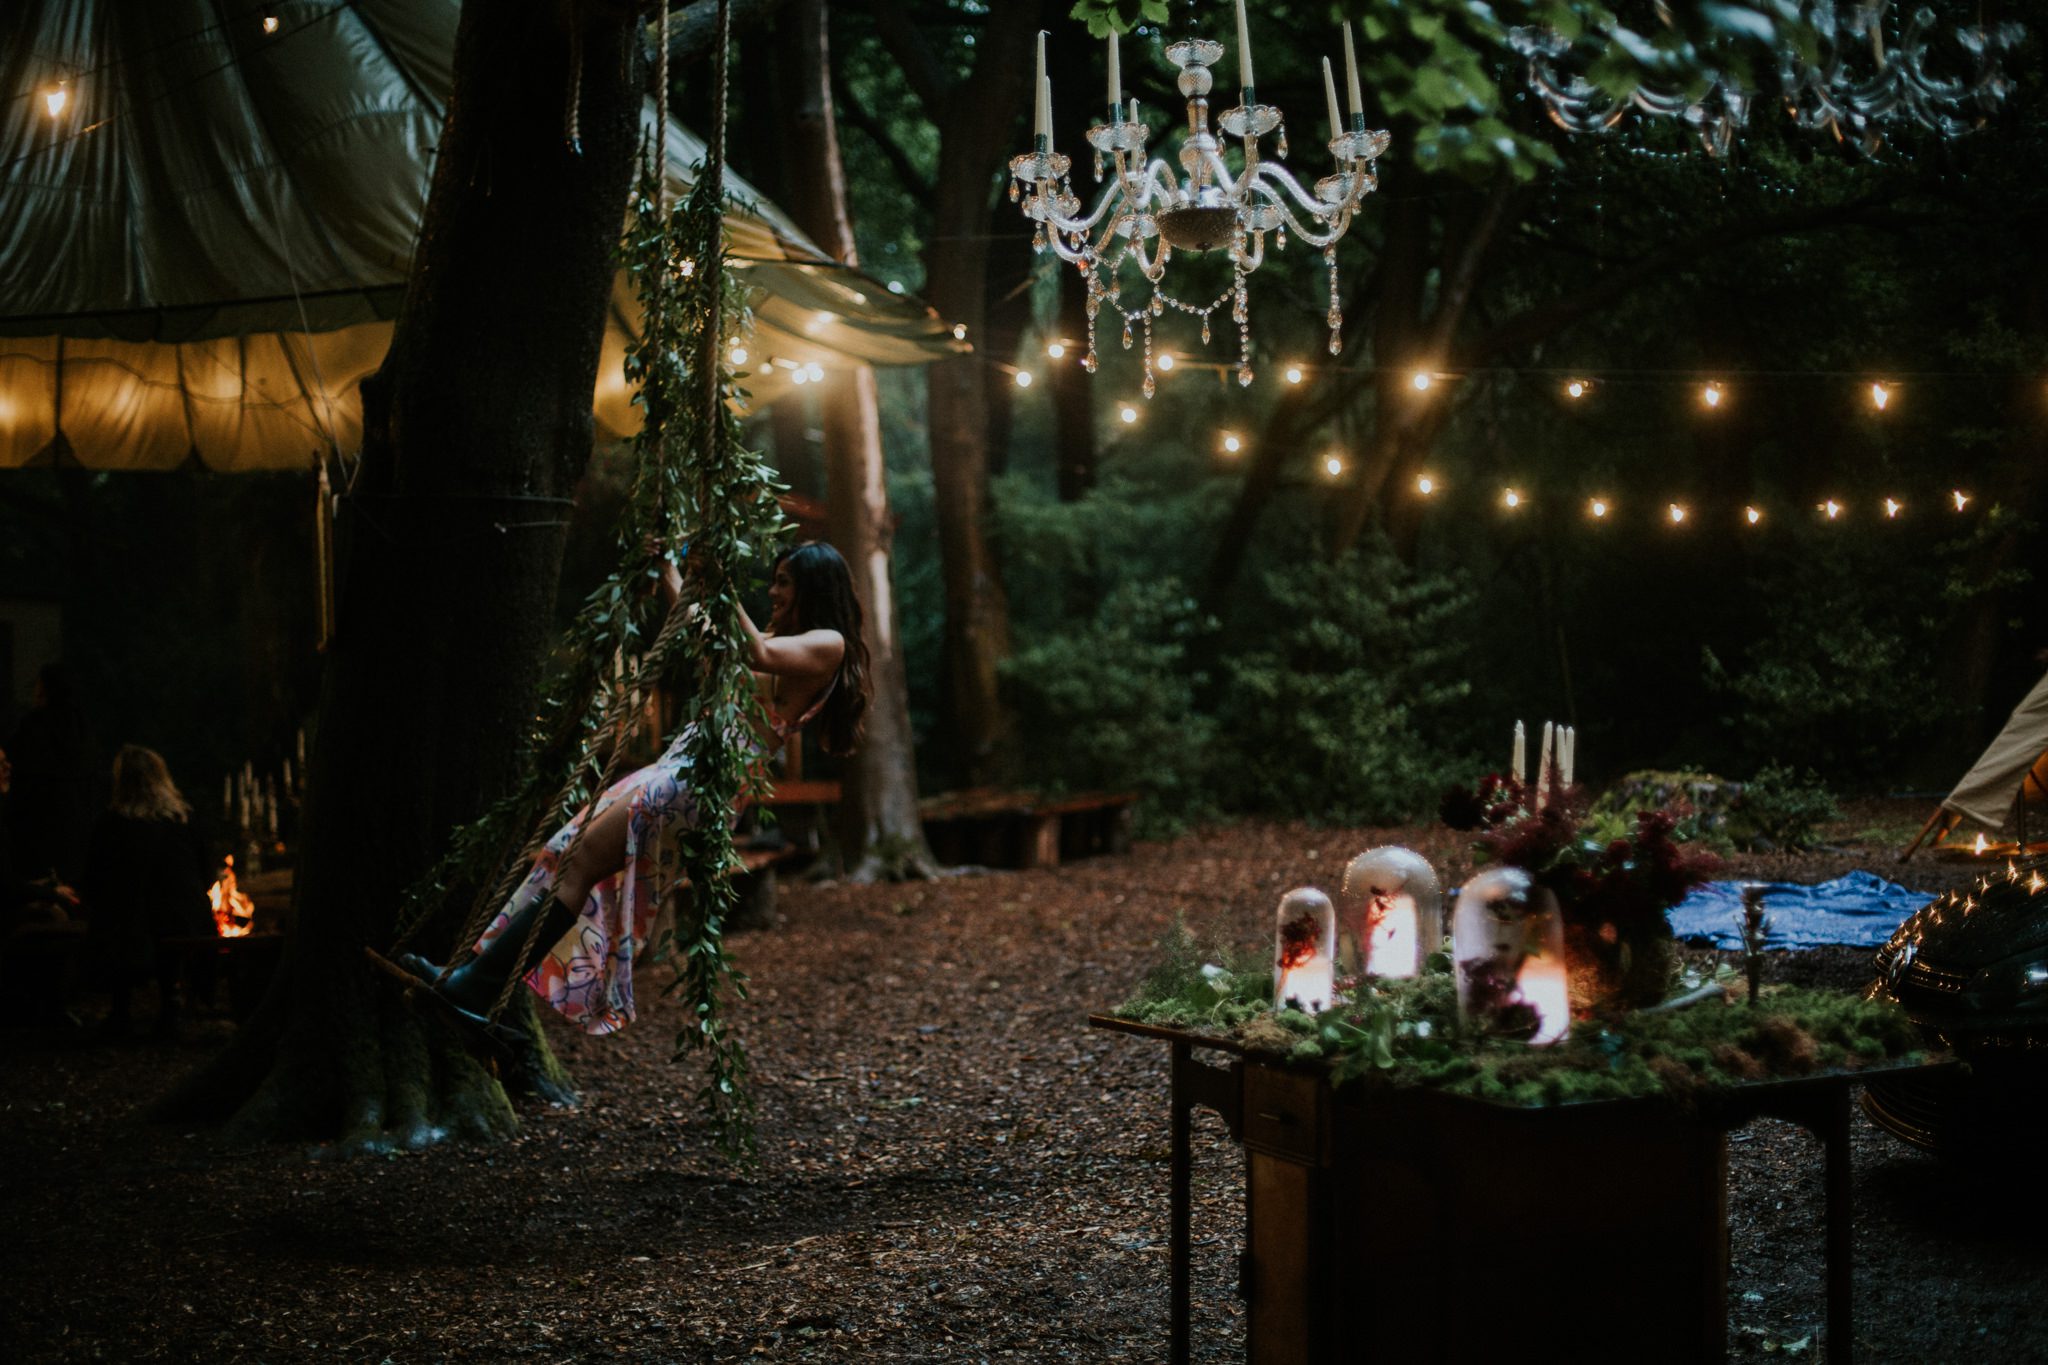 A woodland wedding venue in the rain